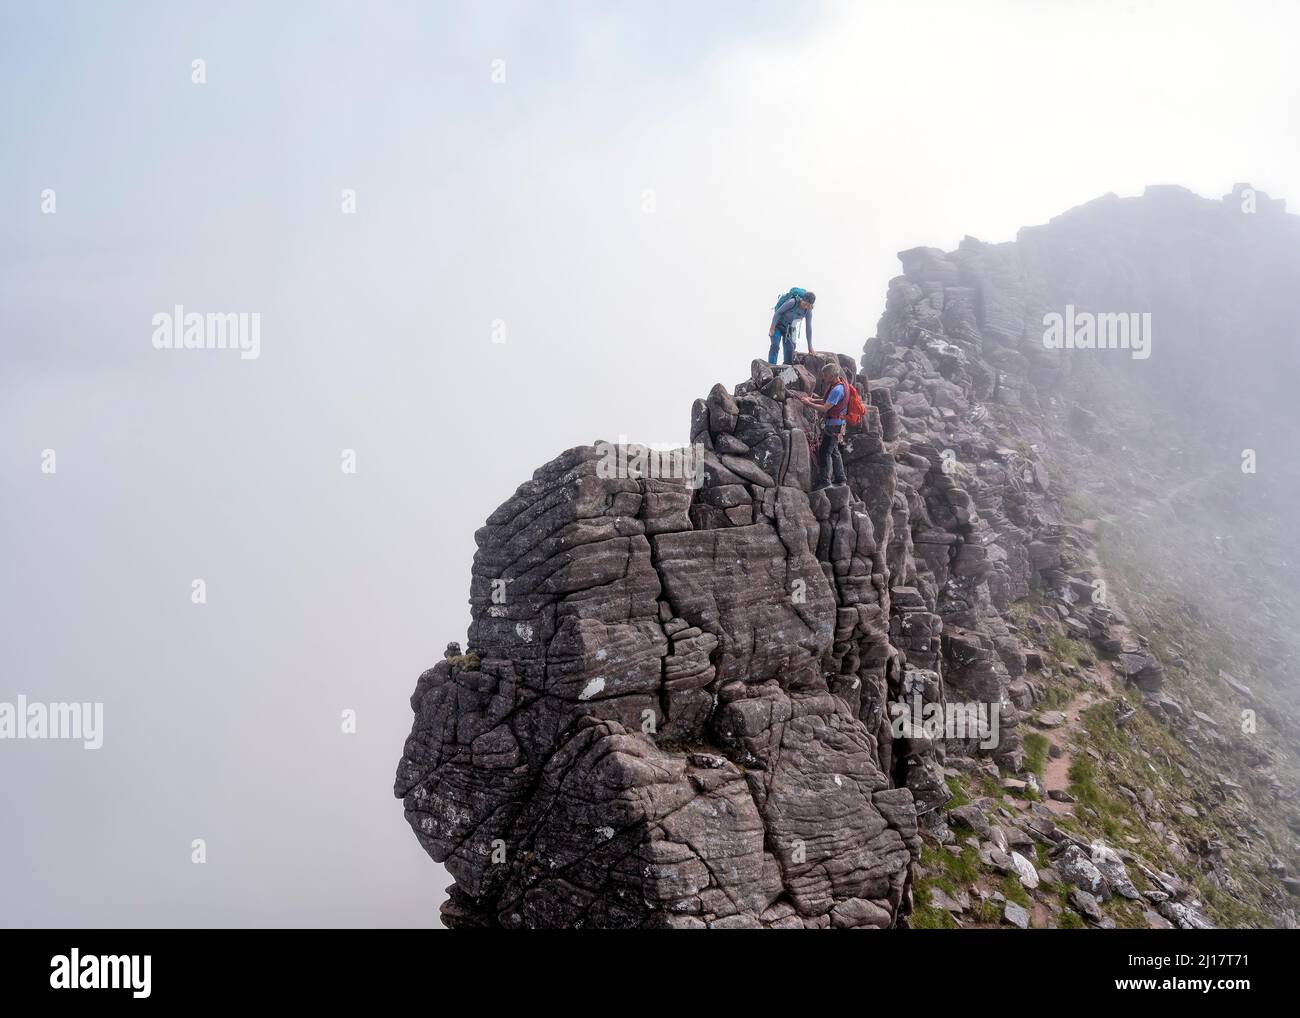 Mann, der der Frau hilft, den felsigen Berg zu erklimmen Stockfoto